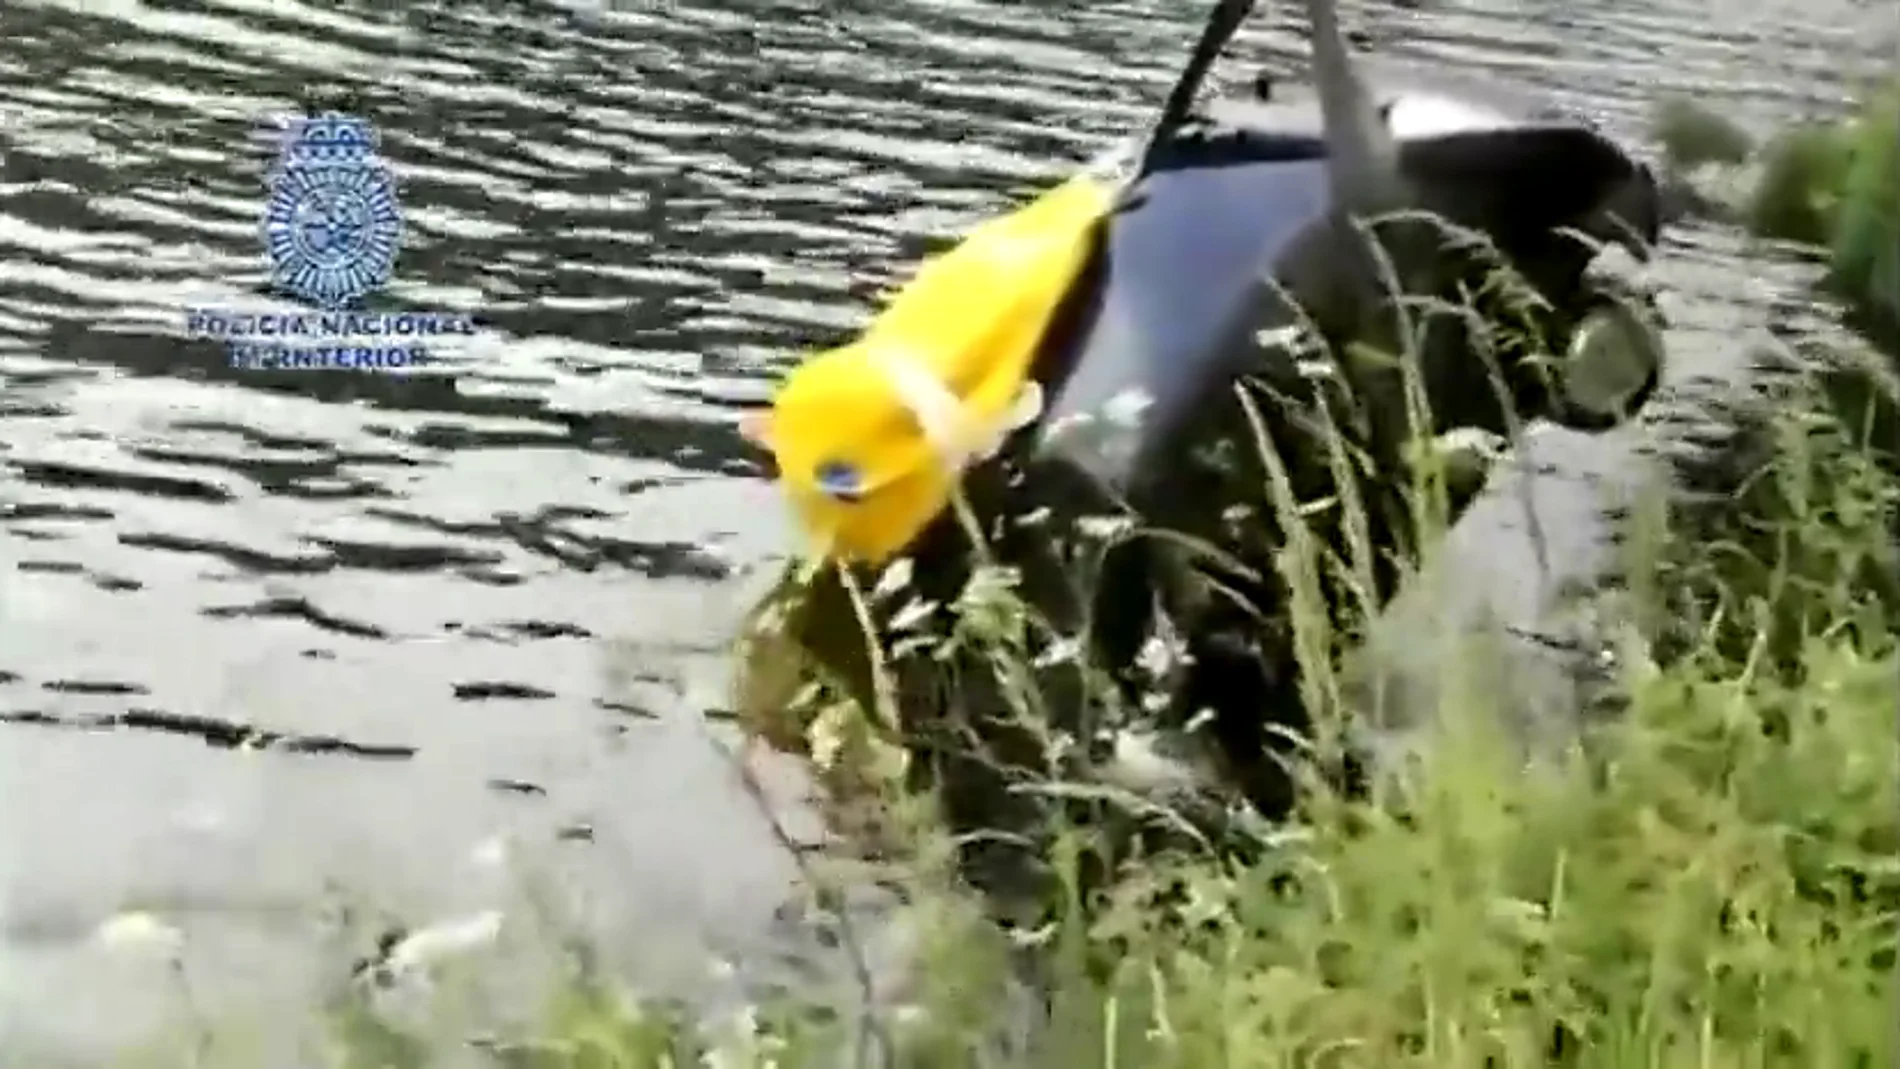 Hallan el cadáver de un hombre desaparecido en el interior de un coche hundido en el río Miño